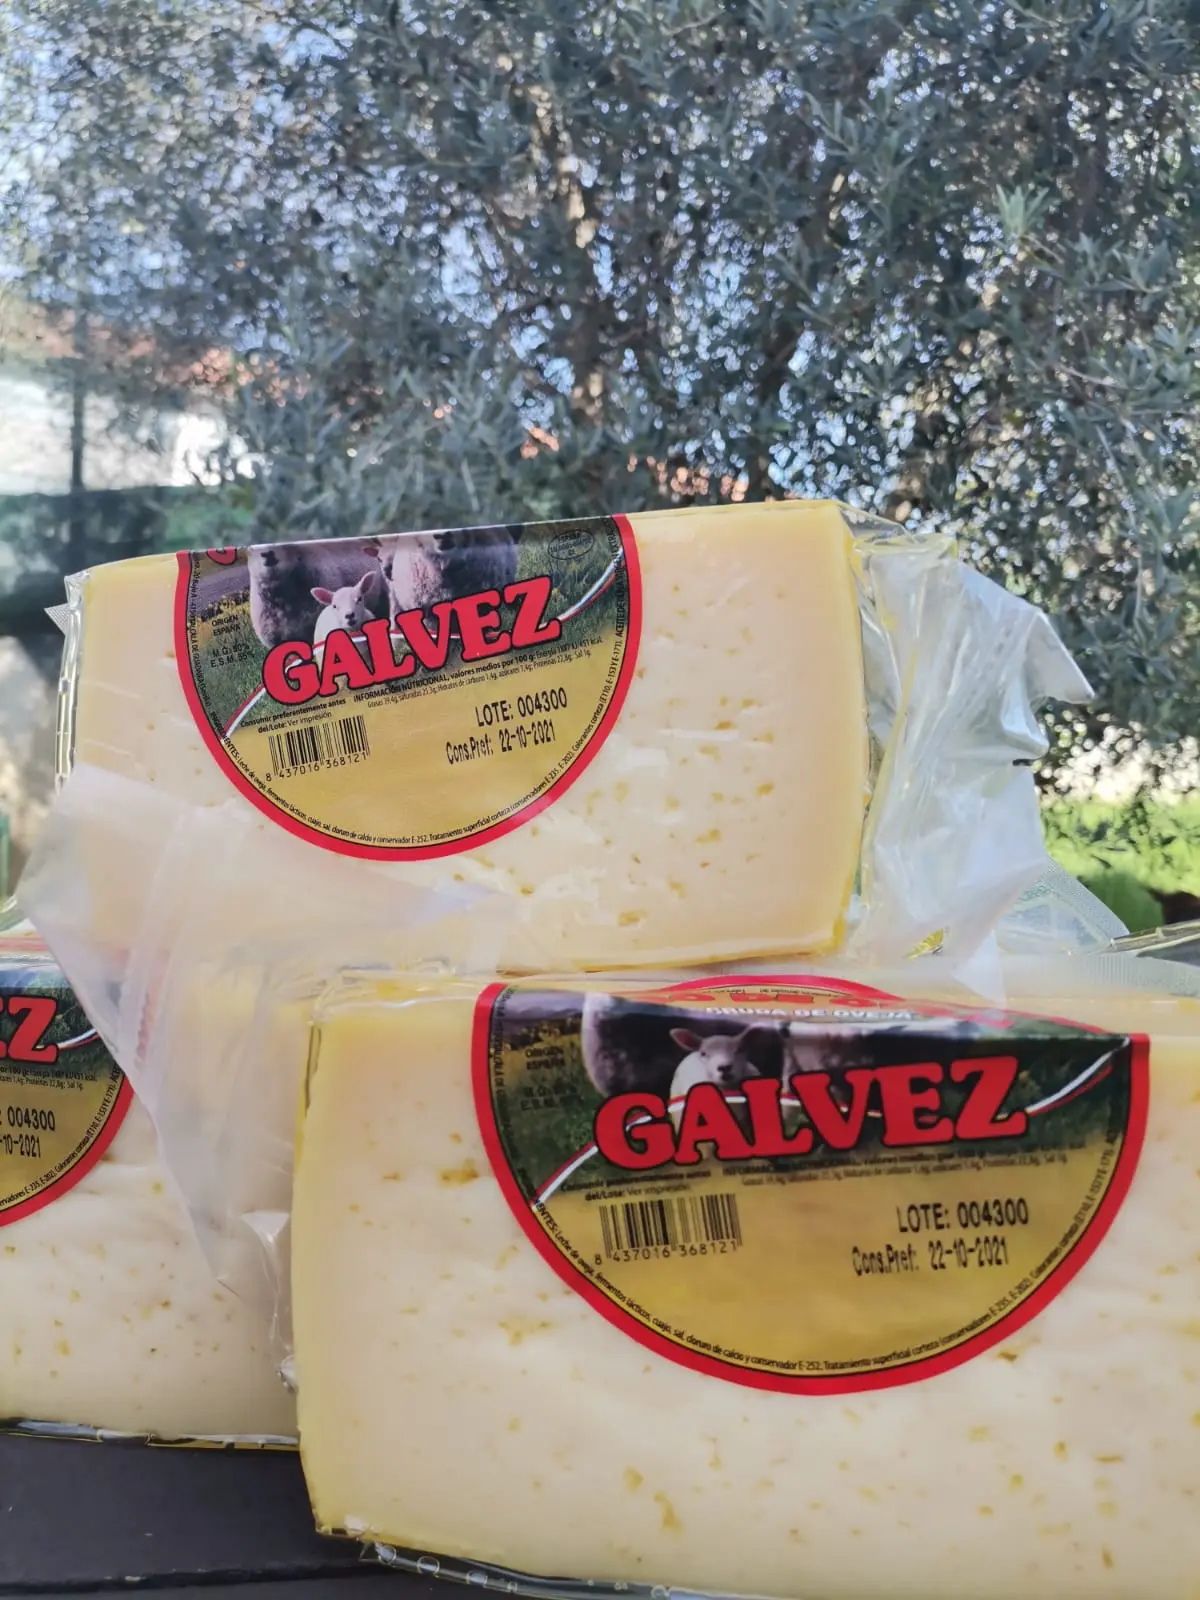 queso galvez - Cómo se llama el queso de Guerrero